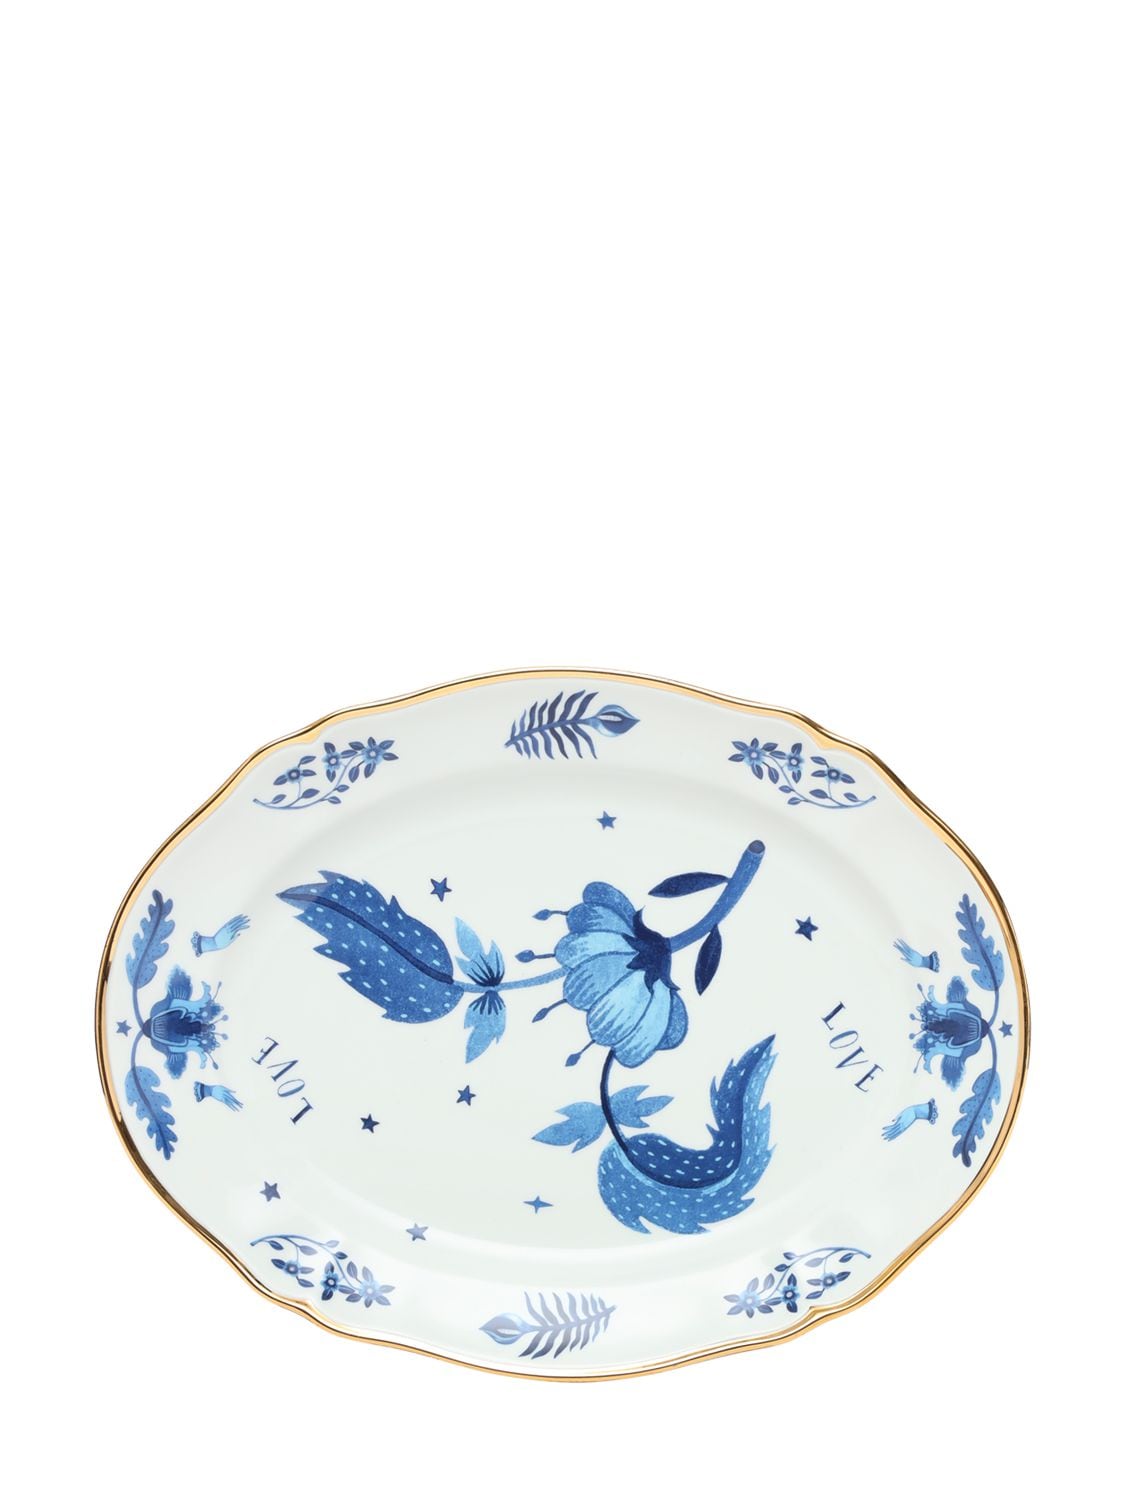 Image of Blue Floral Oval Platter